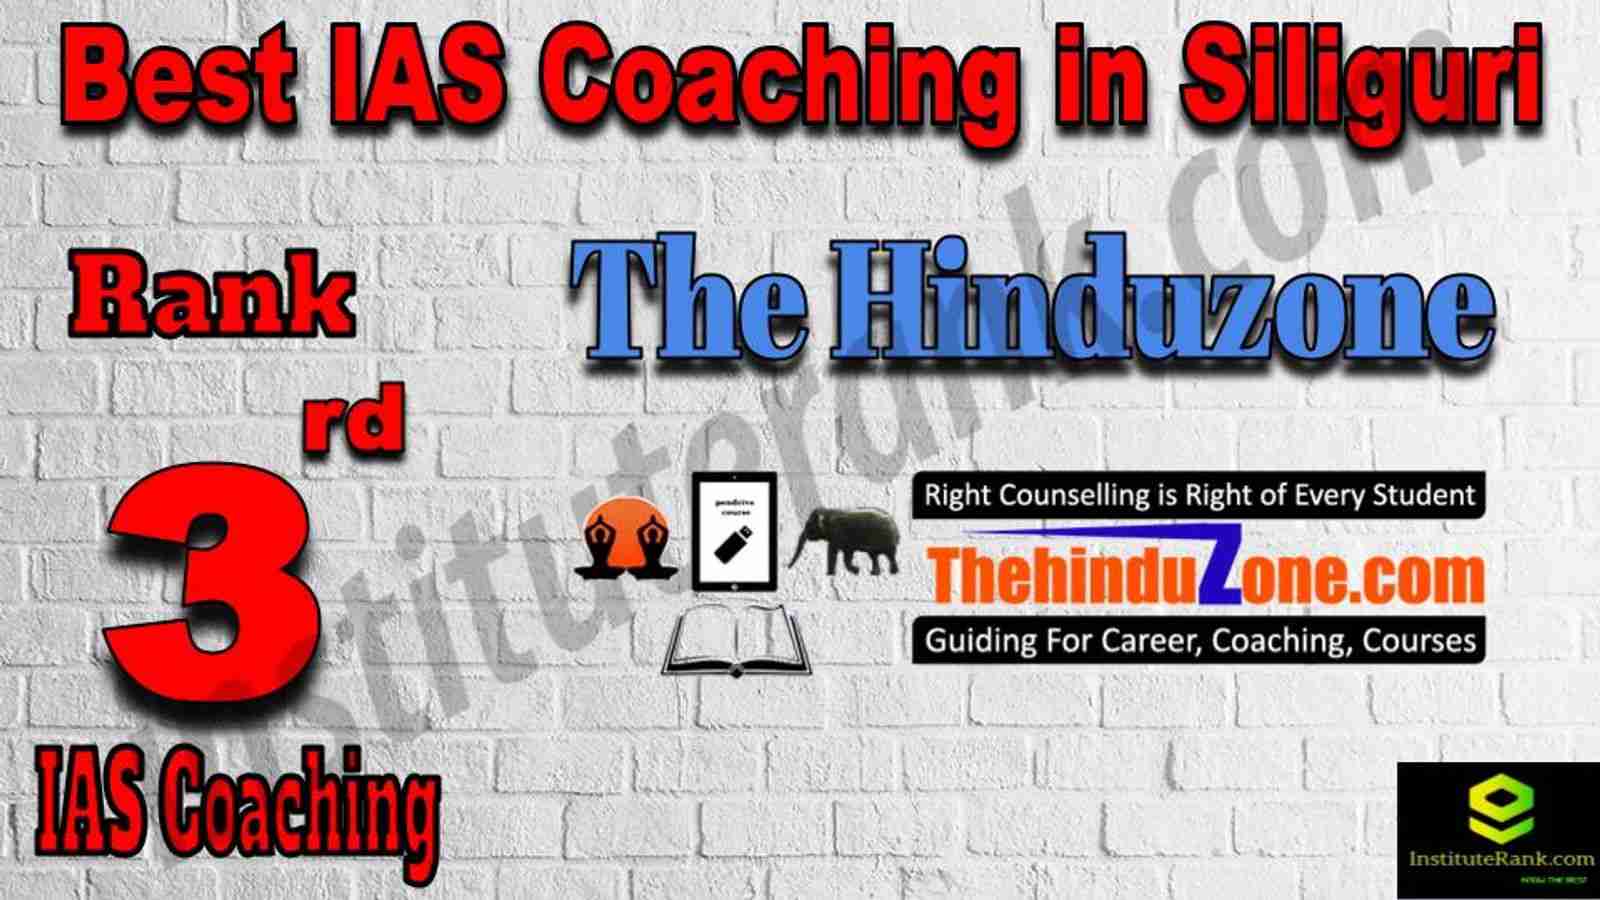 3rd Best IAS Coaching in Siliguri